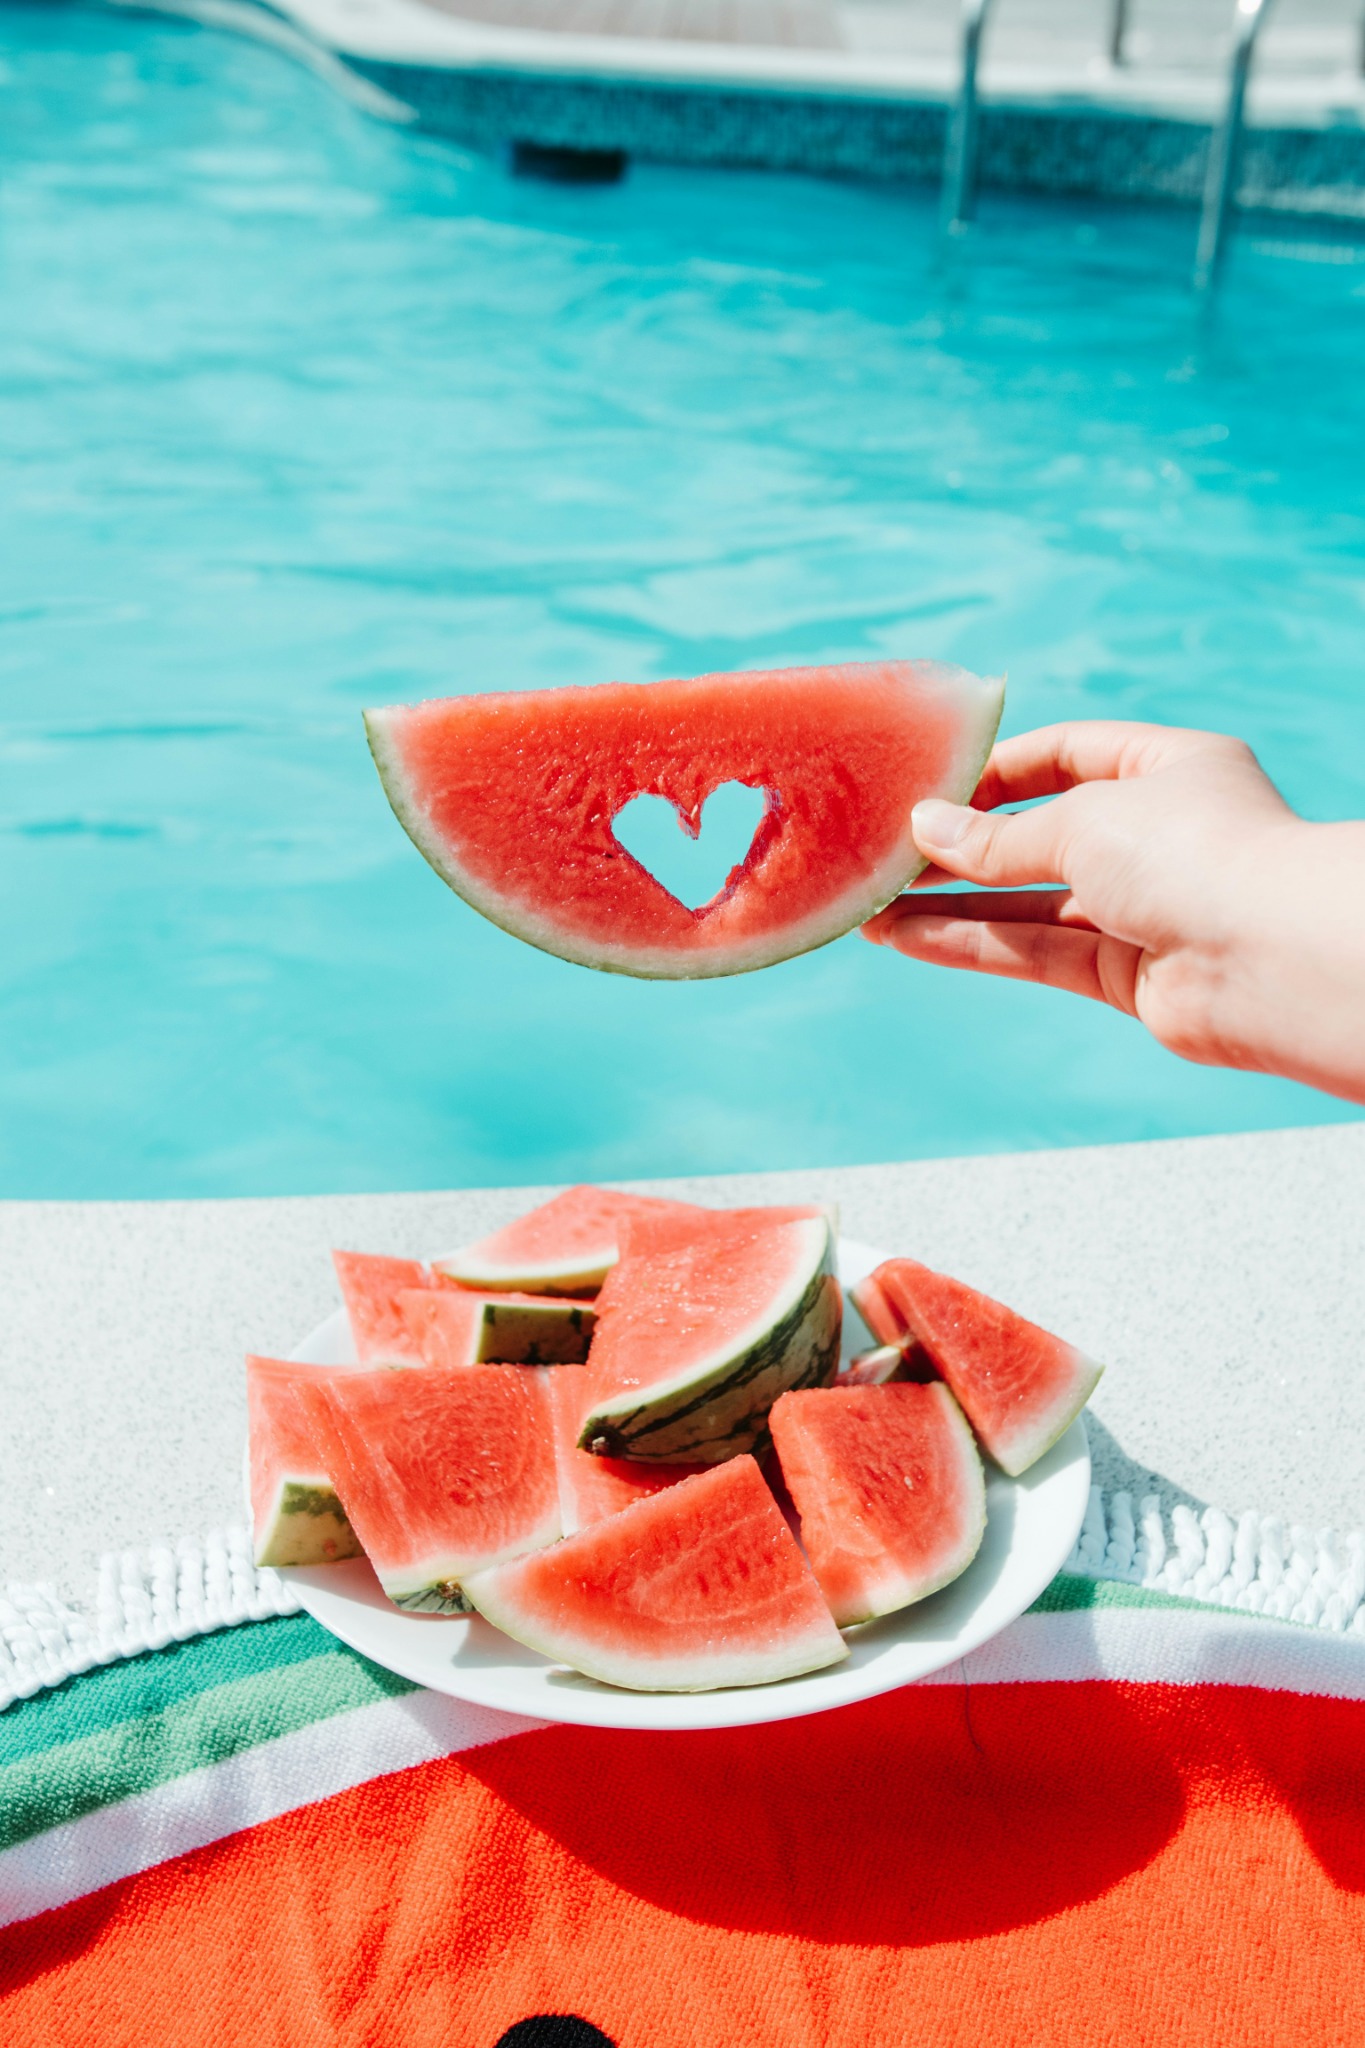 Heart shaped watermelon slice poolside